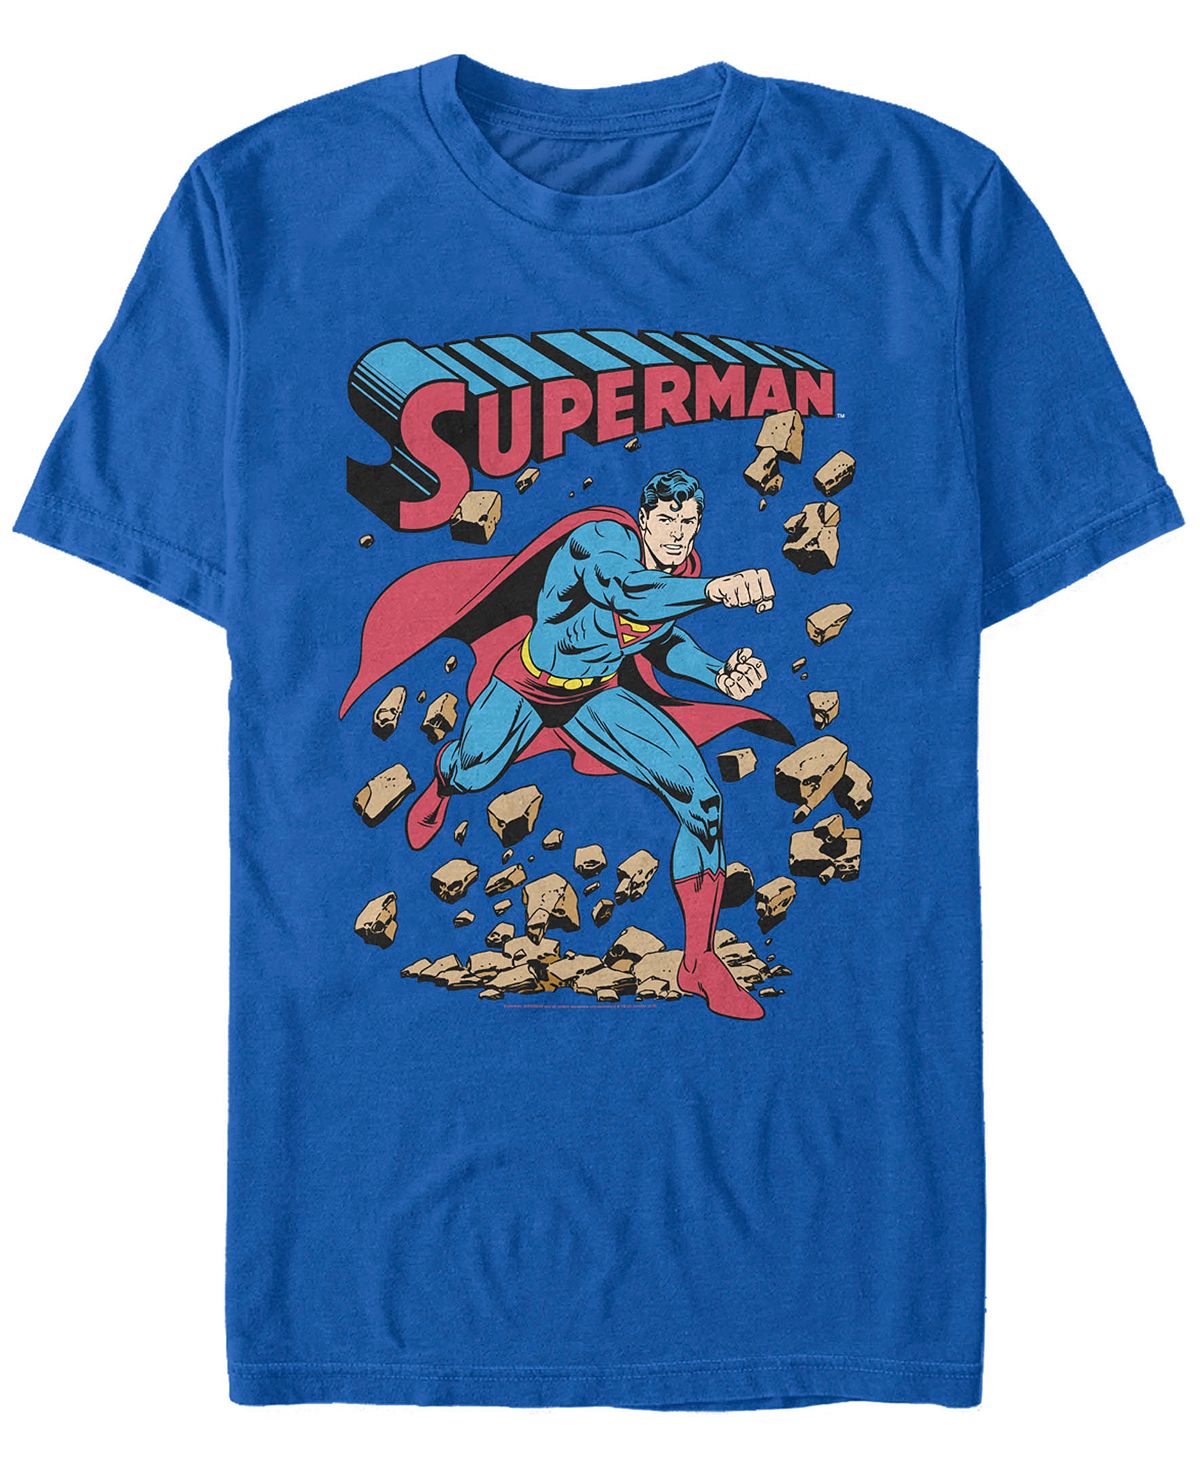 Мужская футболка с коротким рукавом dc superman rock punch Fifth Sun мужская футболка dc batman gotham guardian с коротким рукавом fifth sun черный